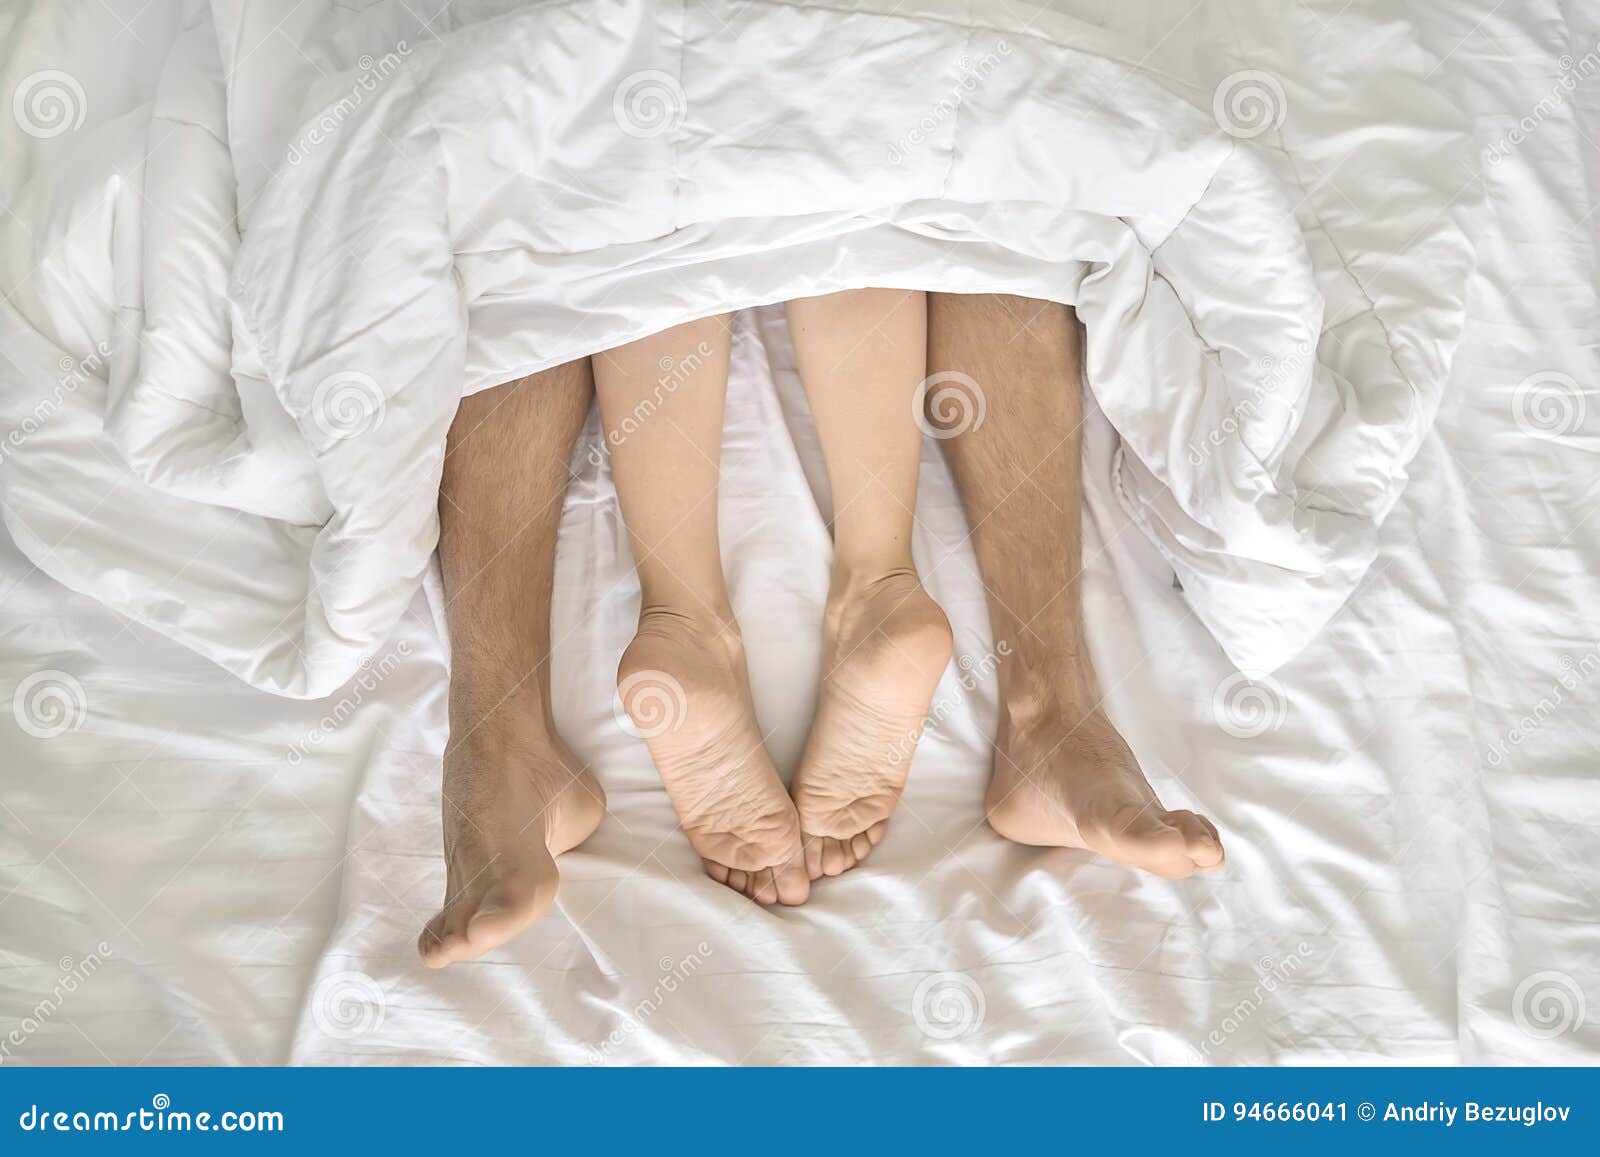 Жена с чувственными ногами. Пяточка из под одеяла. Ноги торчат из под одеяла. Ноги торчат из одеяла. Пятки из под одеяла.